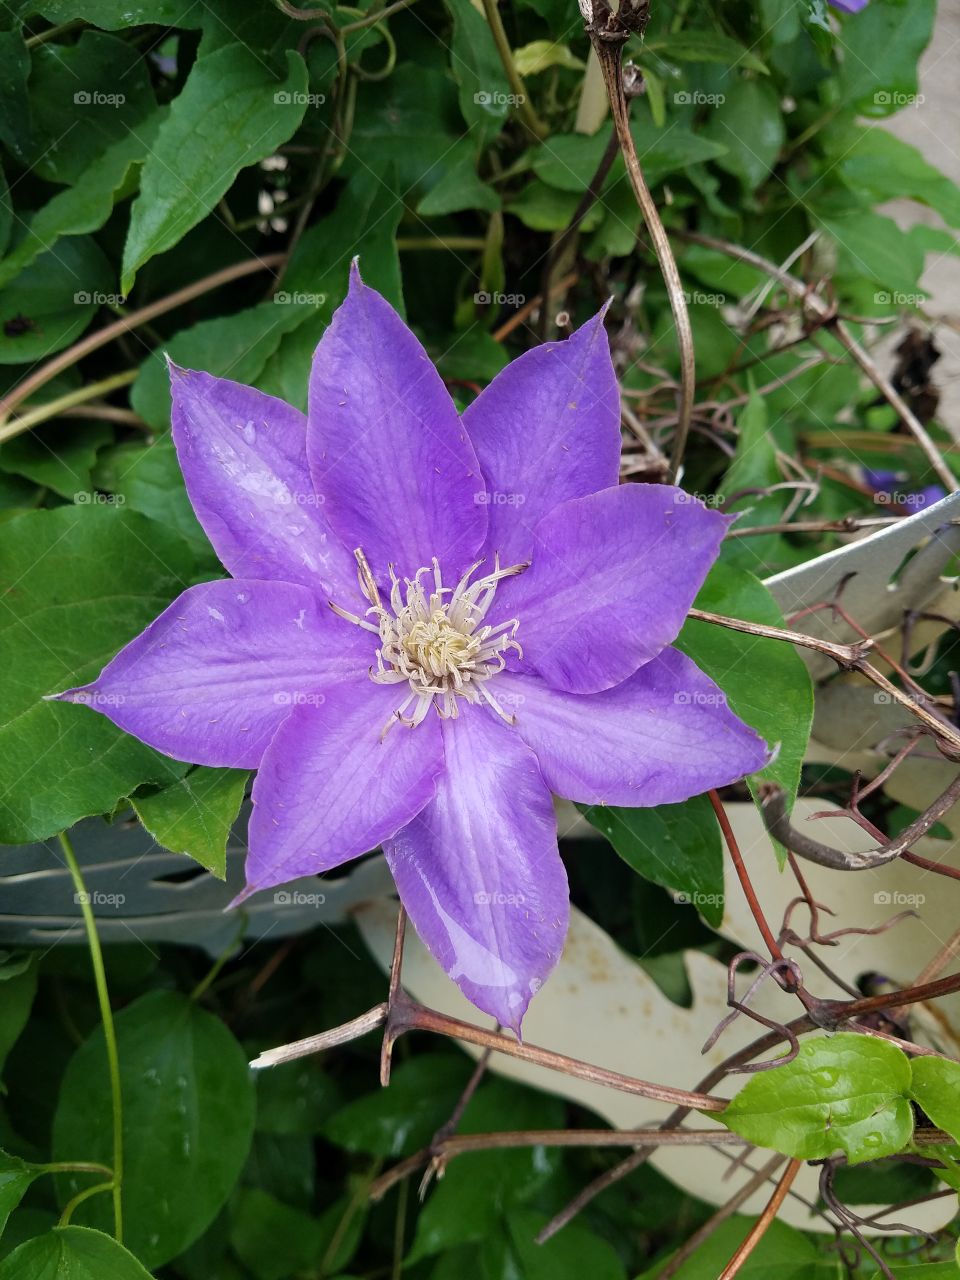 star shaped purple flower